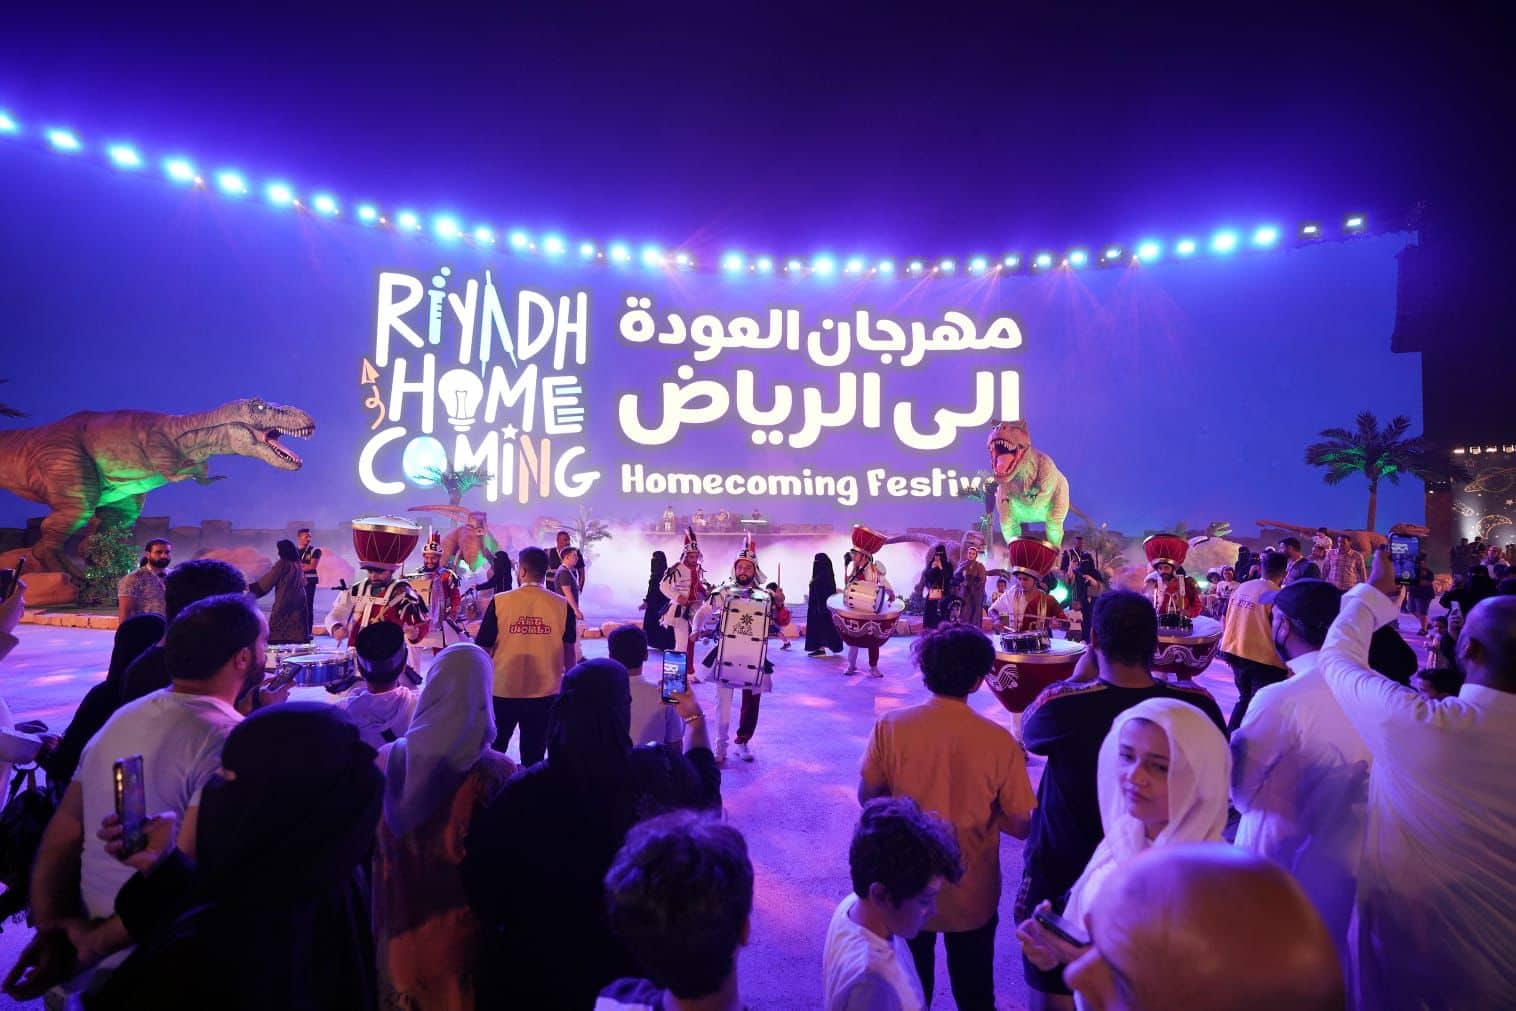 هيئة الترفيه السعودية تطلق مهرجان العودة إلى الرياض | صور - بوابة الأهرام